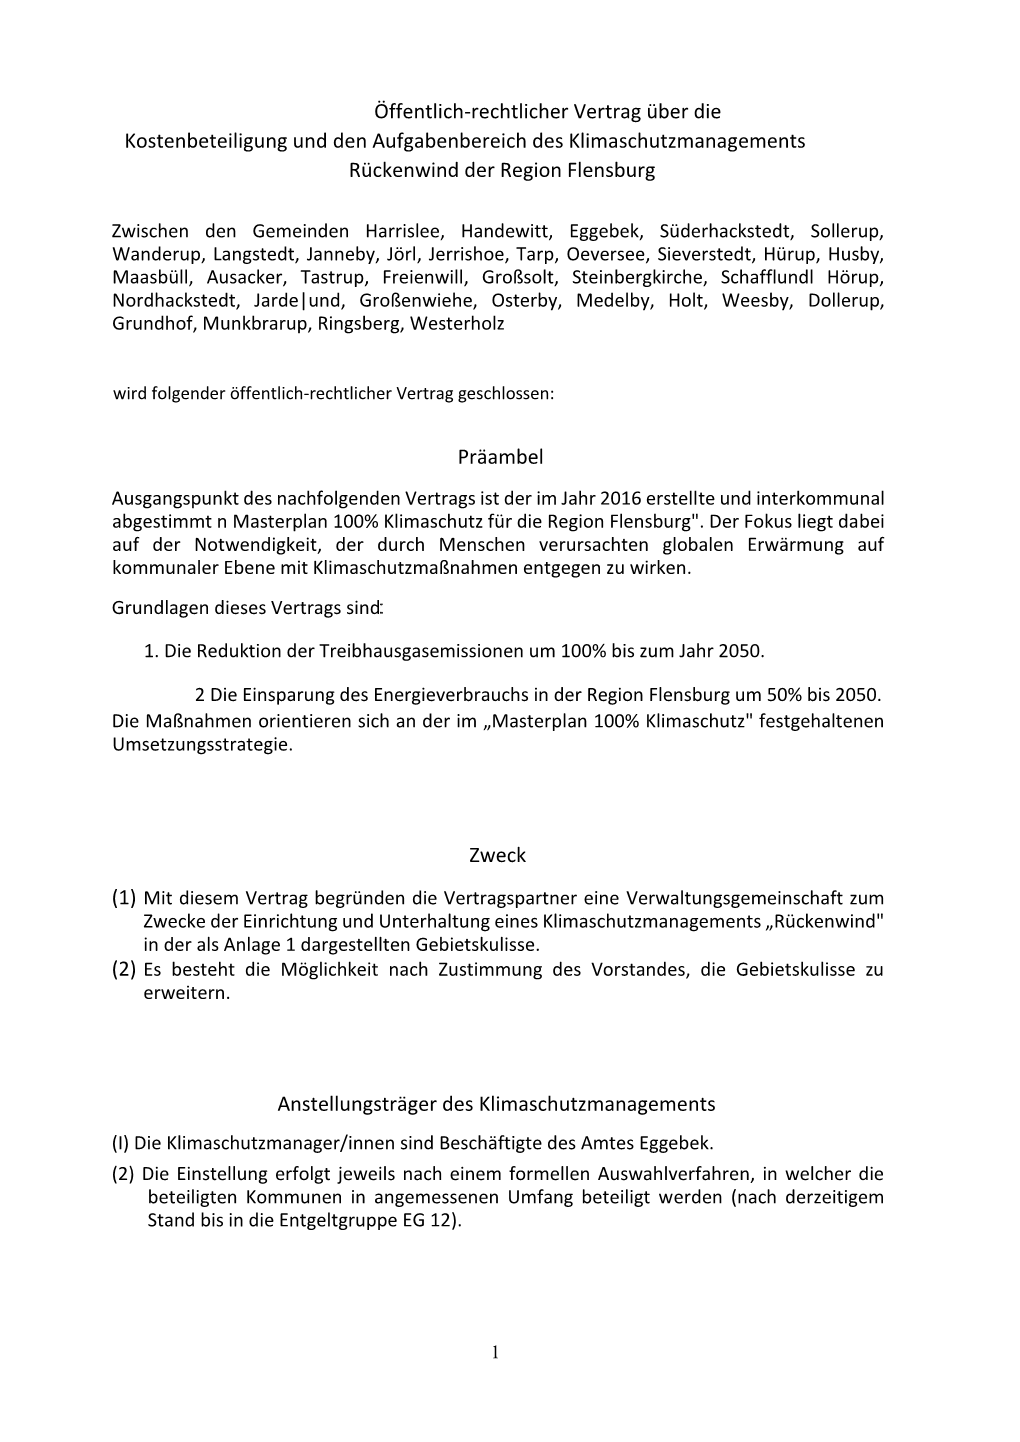 Öffentlich-Rechtlicher Vertrag Über Die Kostenbeteiligung Und Den Aufgabenbereich Des Klimaschutzmanagements Rückenwind Der Region Flensburg